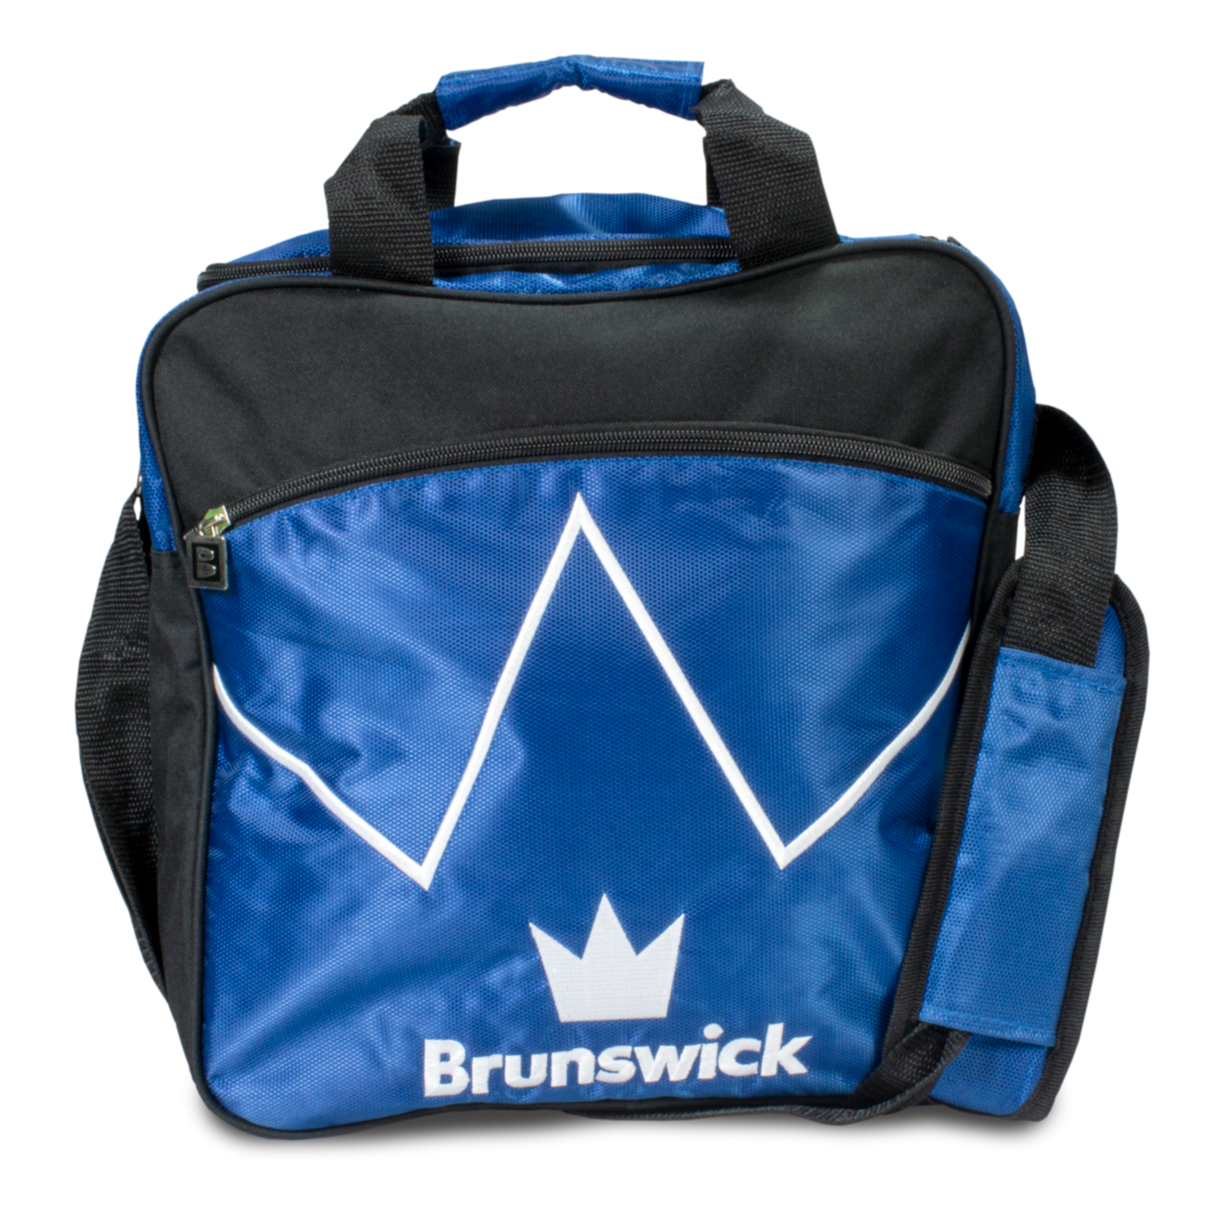 brunswick single ball tote blue blitz bowling bag travel suitcase league tournament play sale discount coupon online pba tour